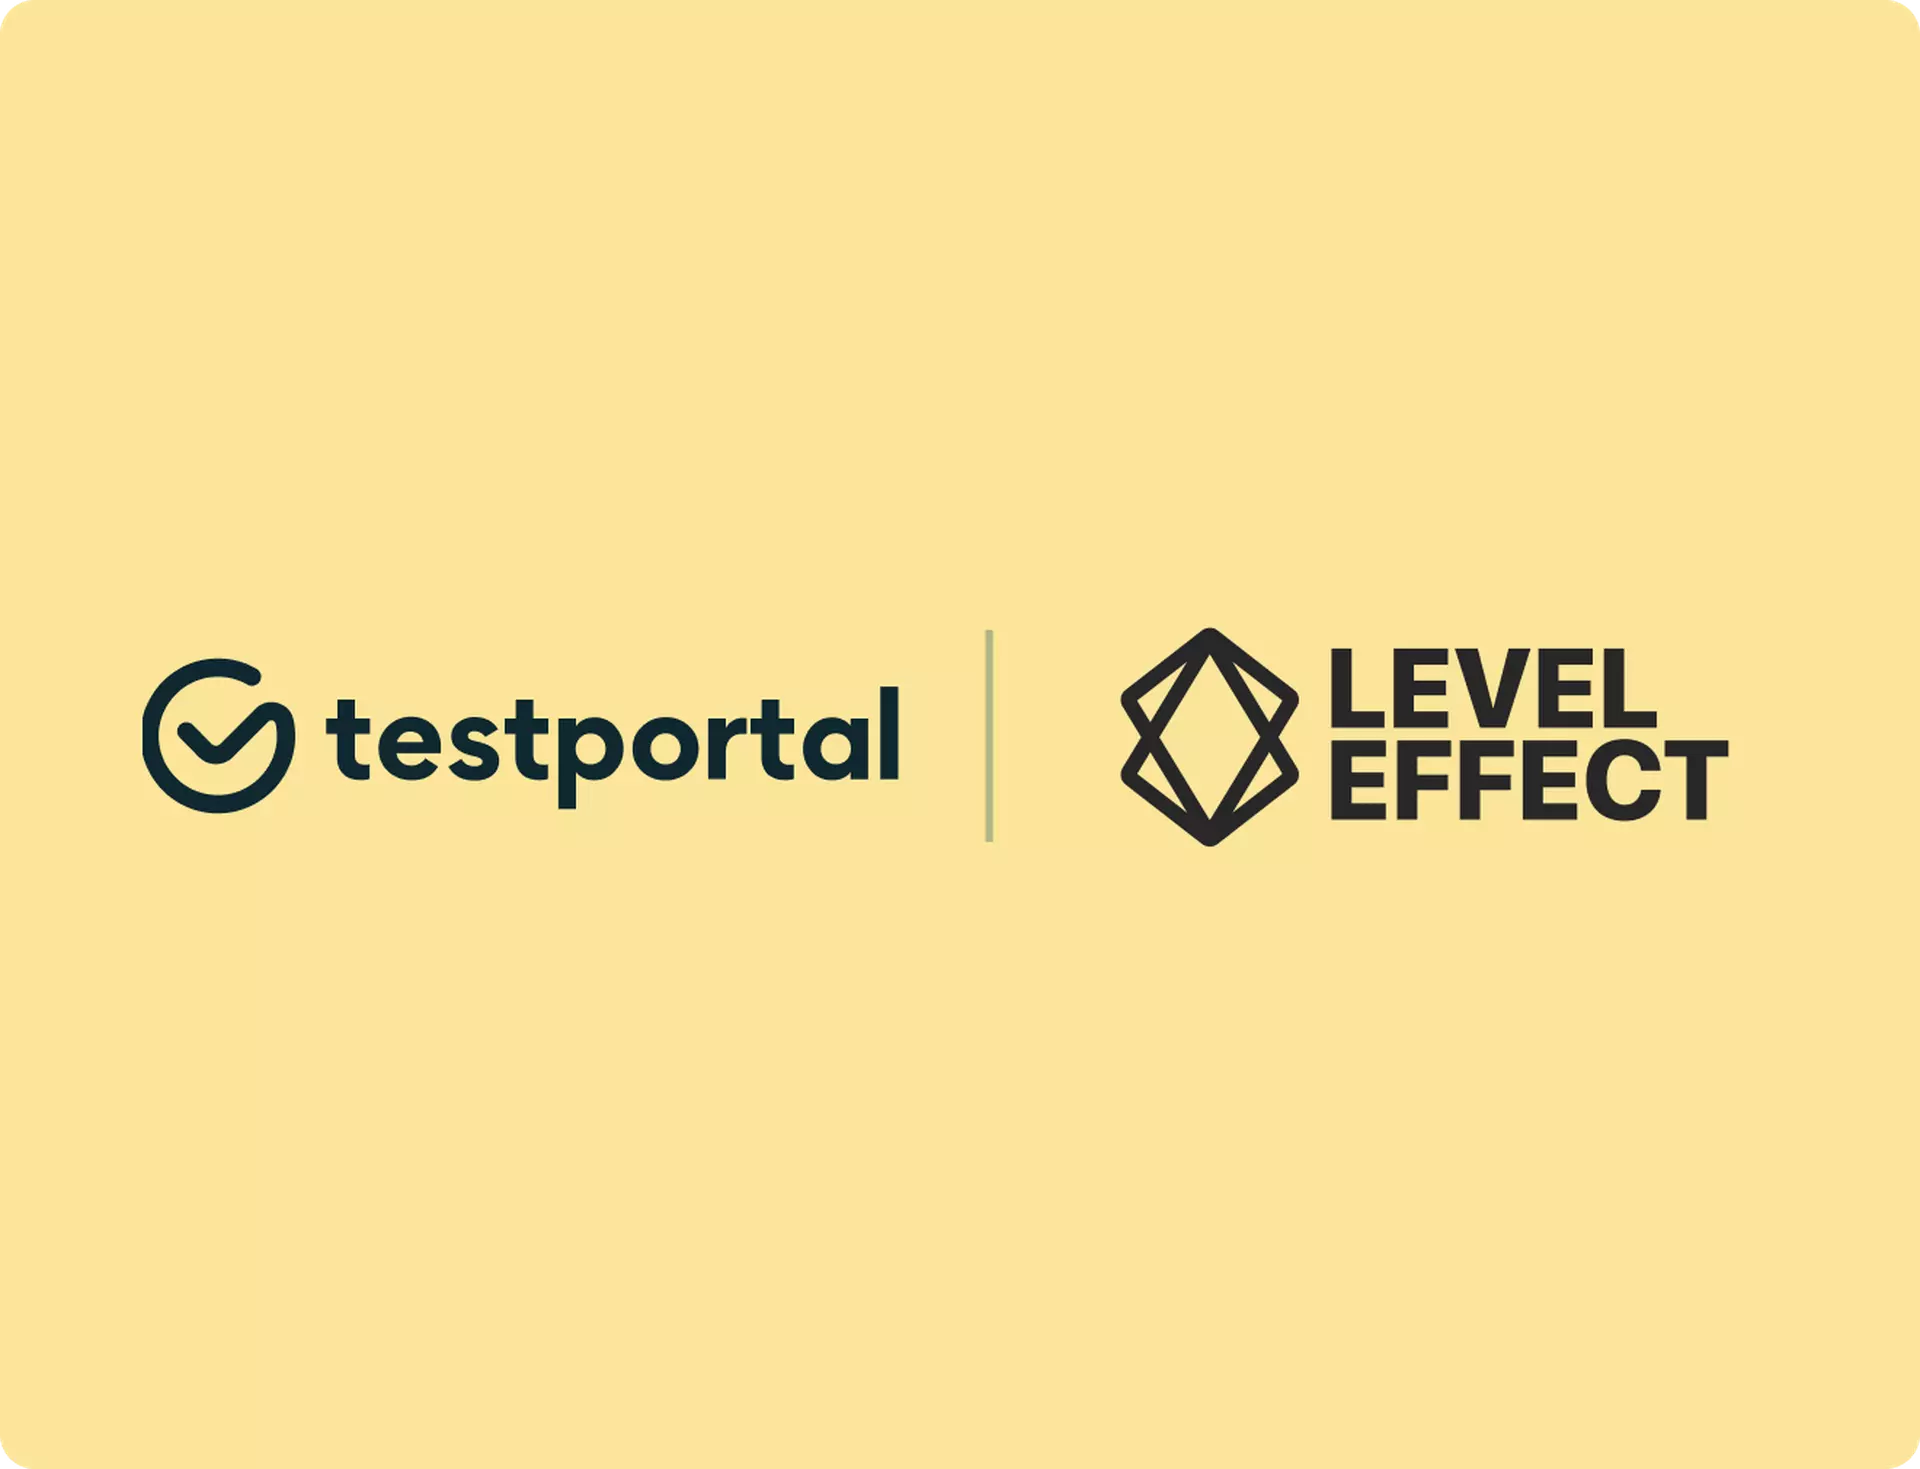 Testportal and Level Effect logos